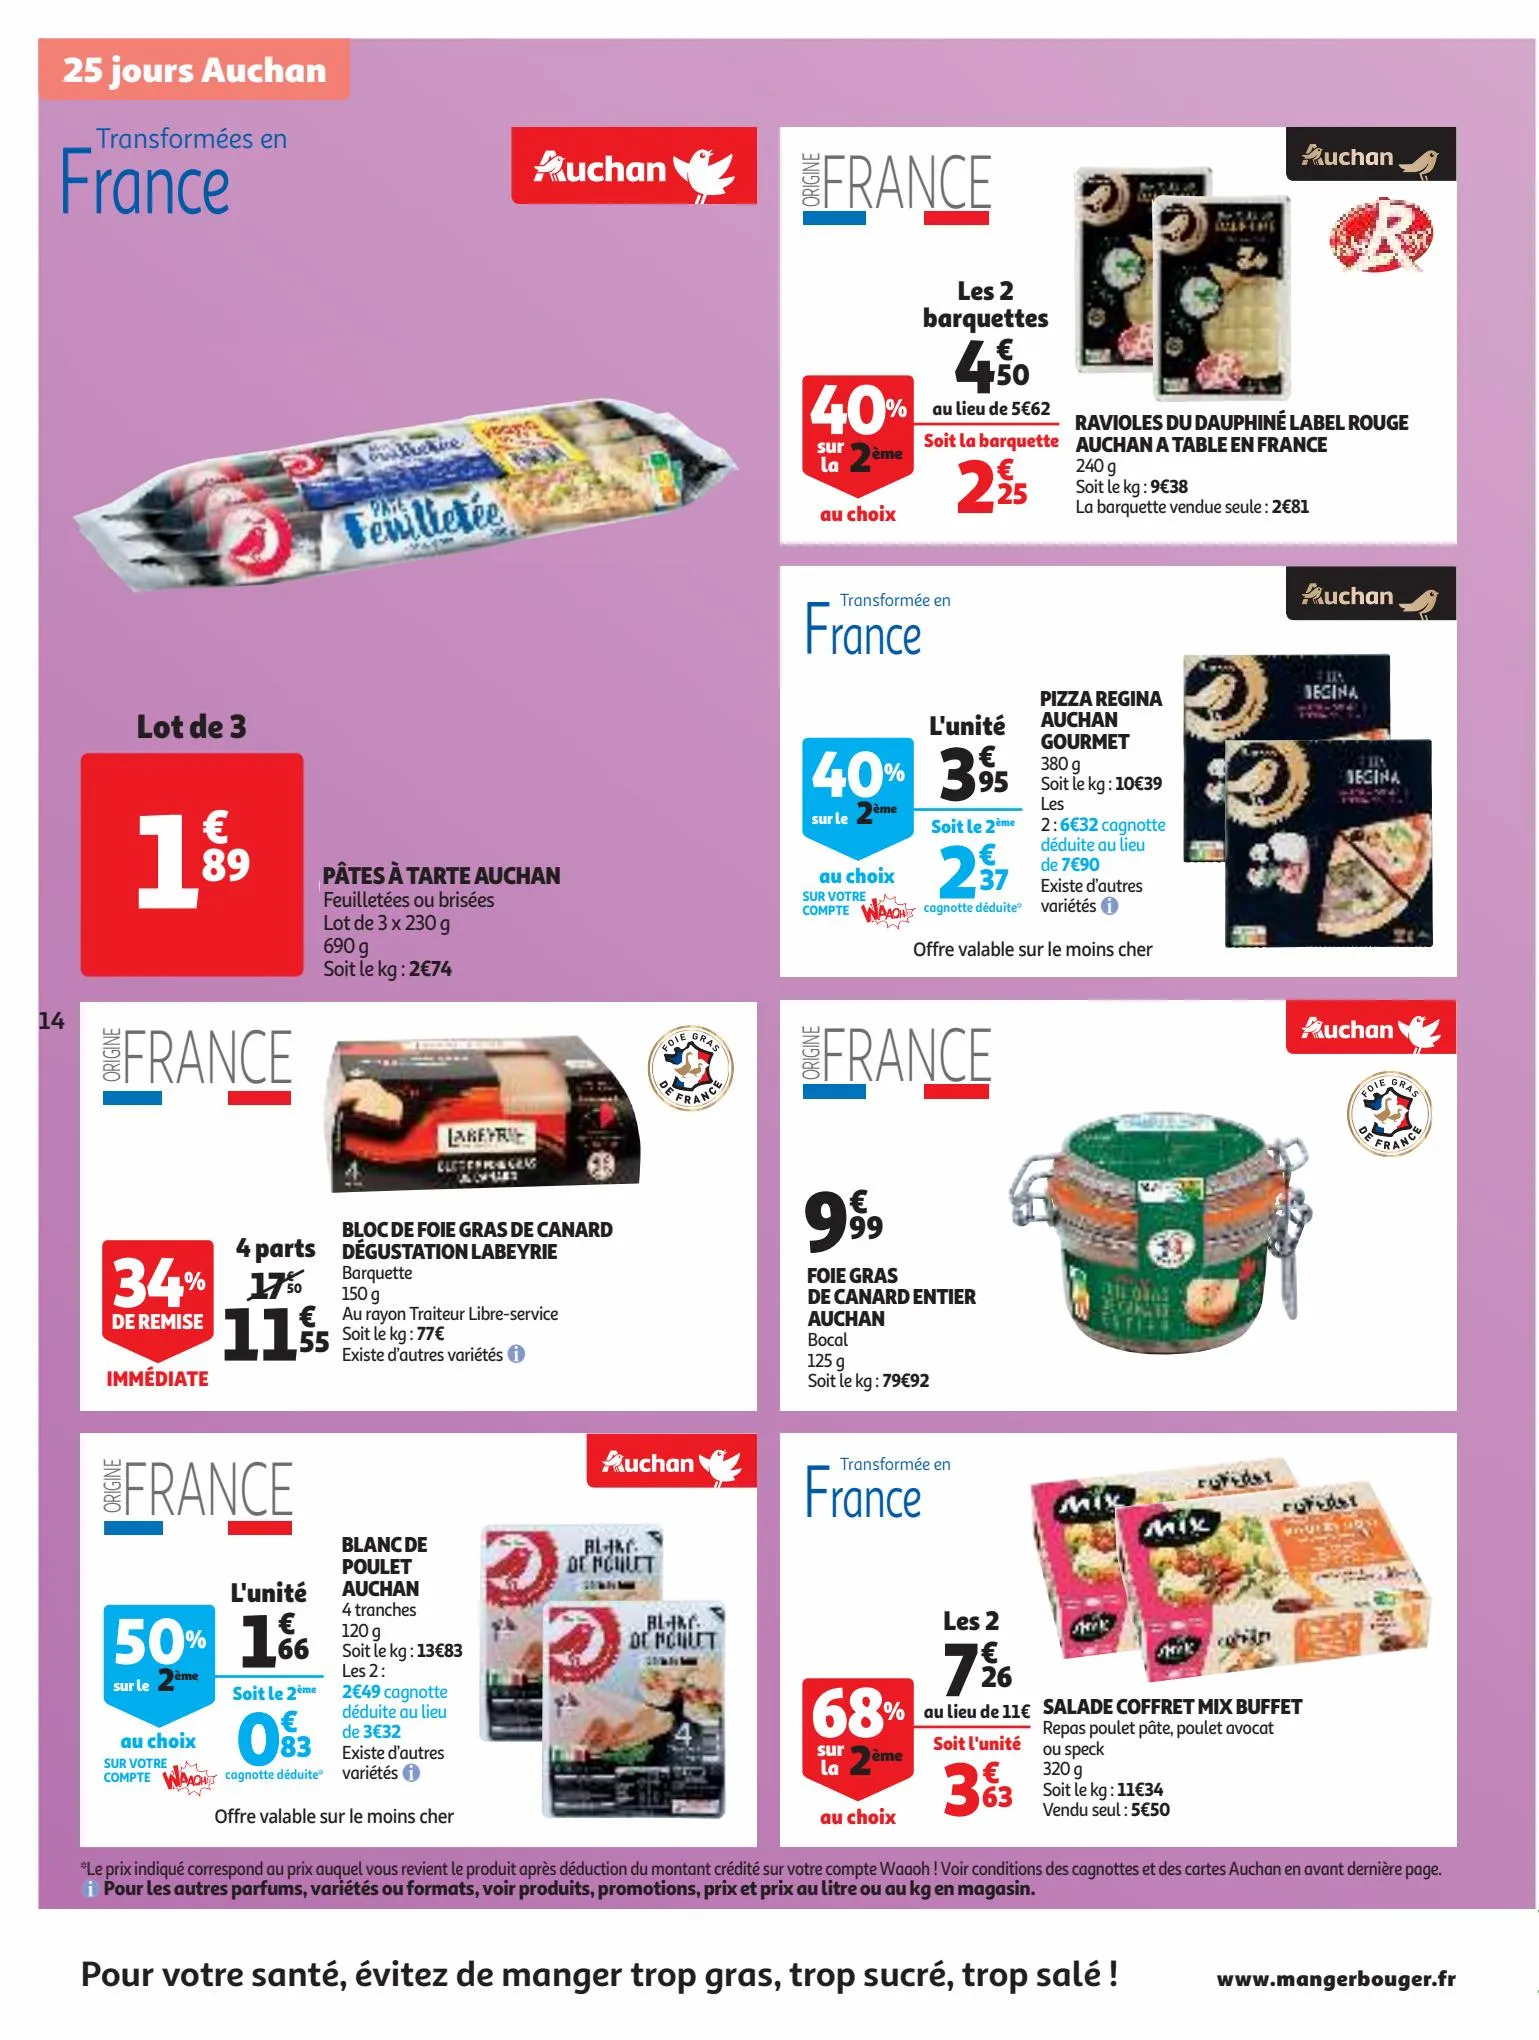 Catalogue 25 Jours Auchan, page 00014